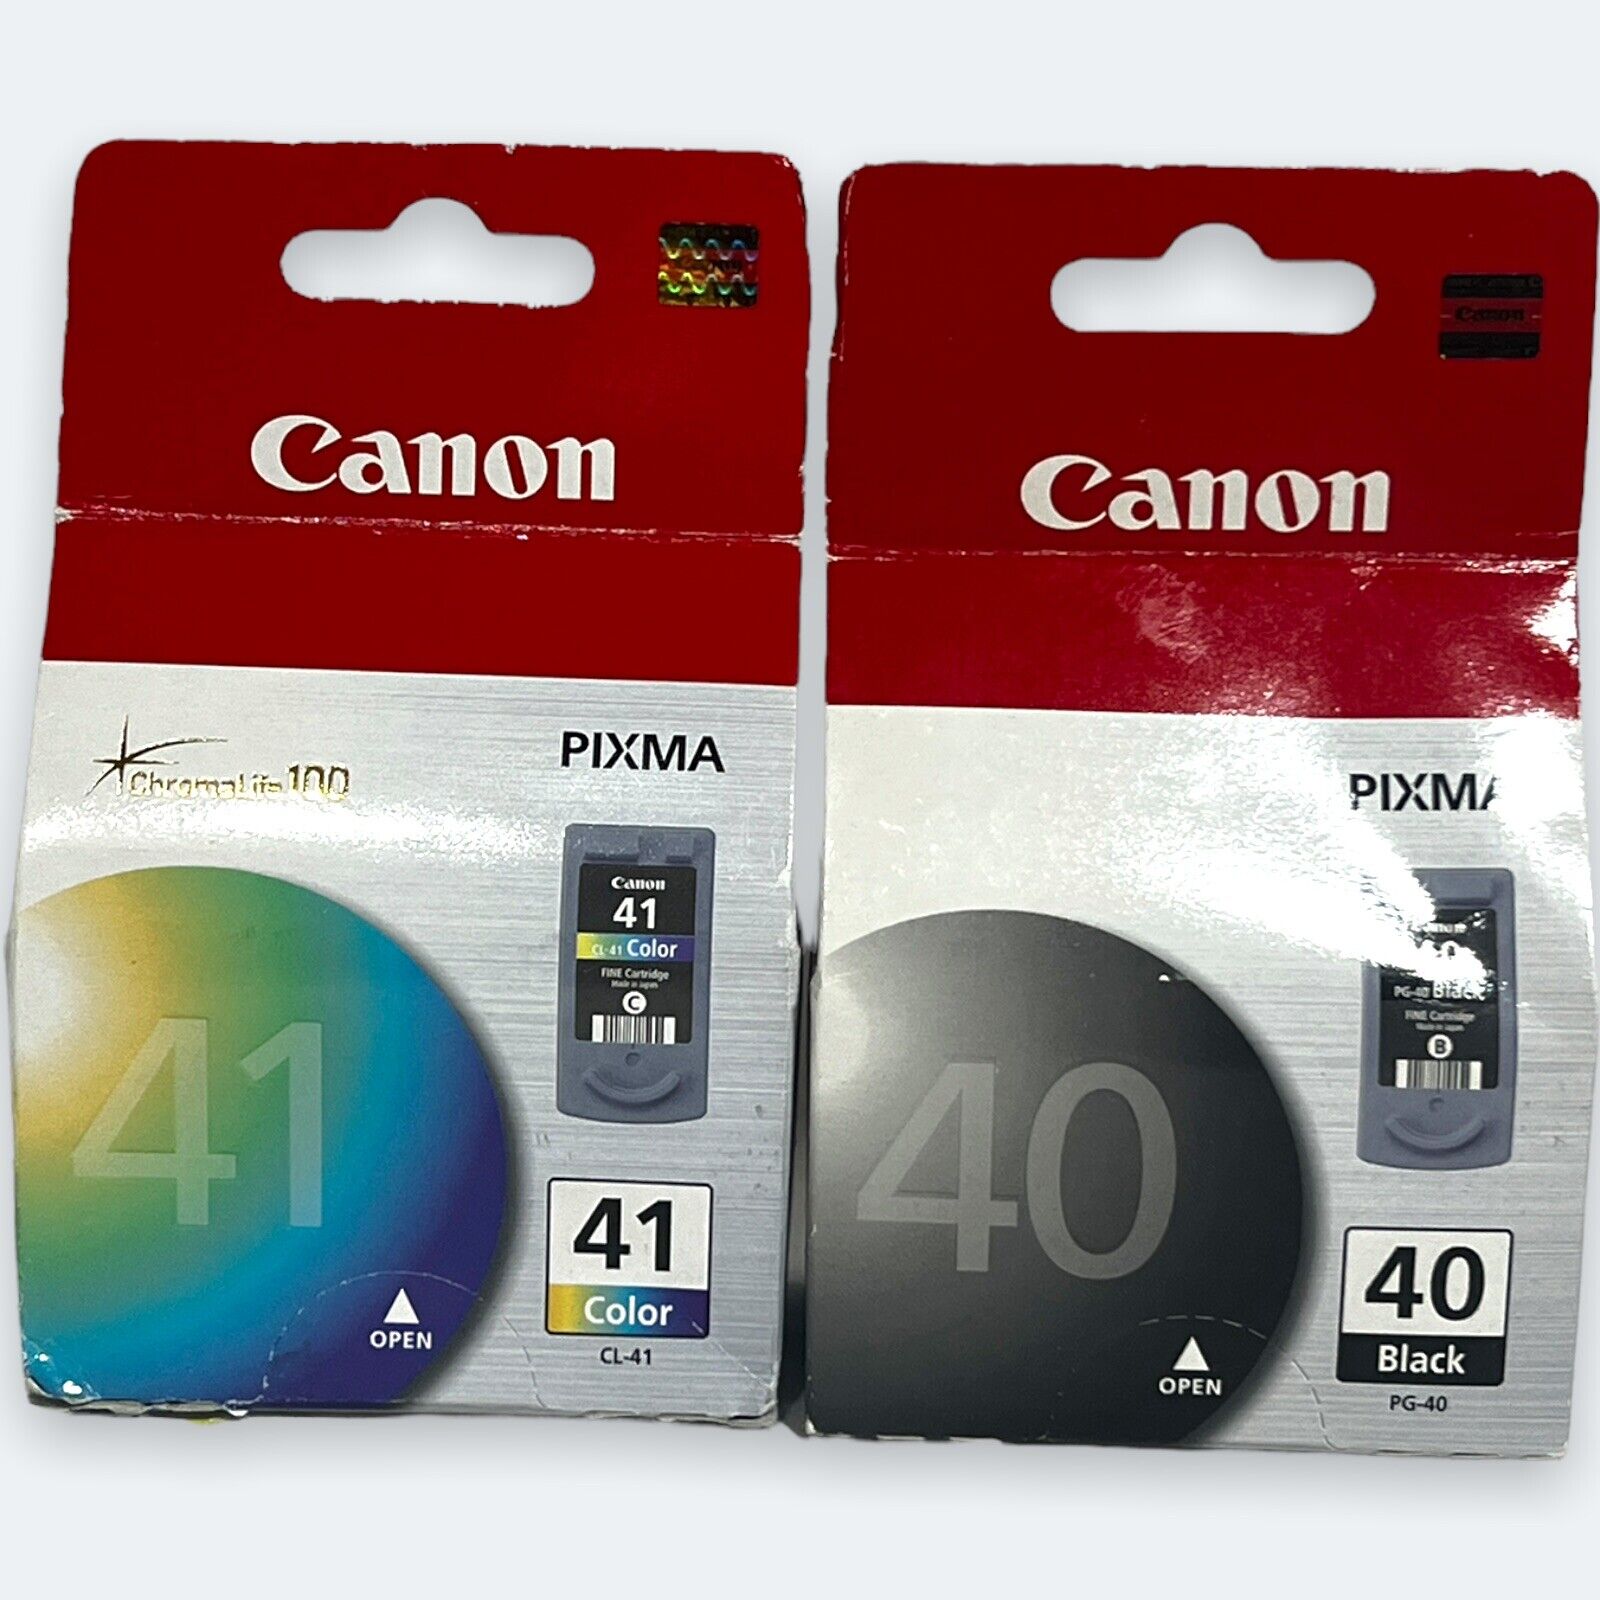 Canon pixma 40. PG-40.